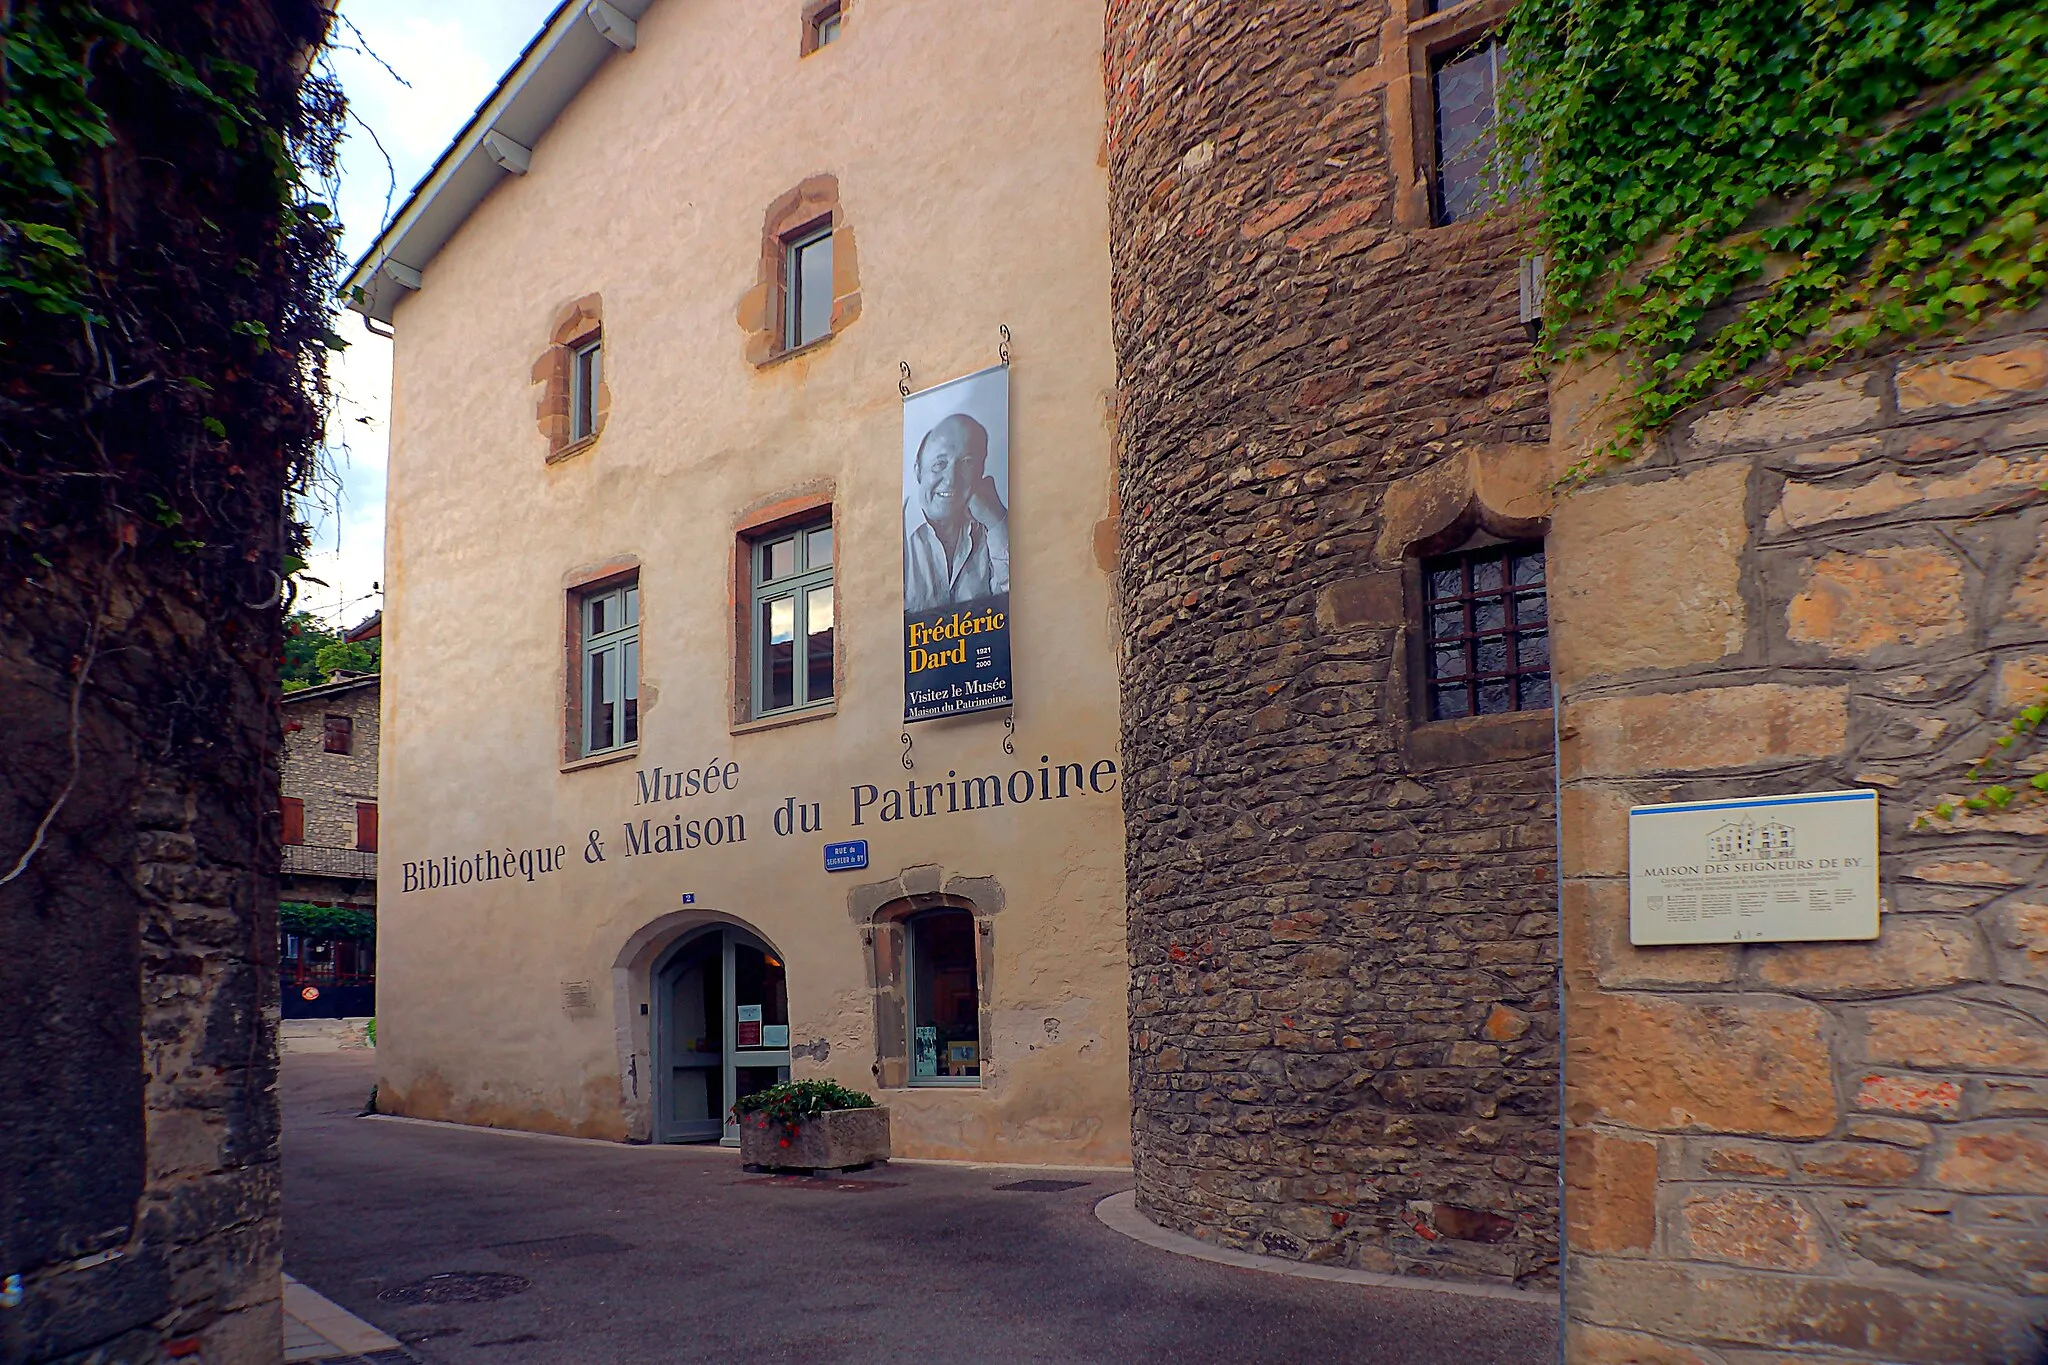 Photo showing: La Maison du patrimoine, située dans une ancienne maison de chanoine du XVIe siècle. Faisant office de musée et bibliothèque